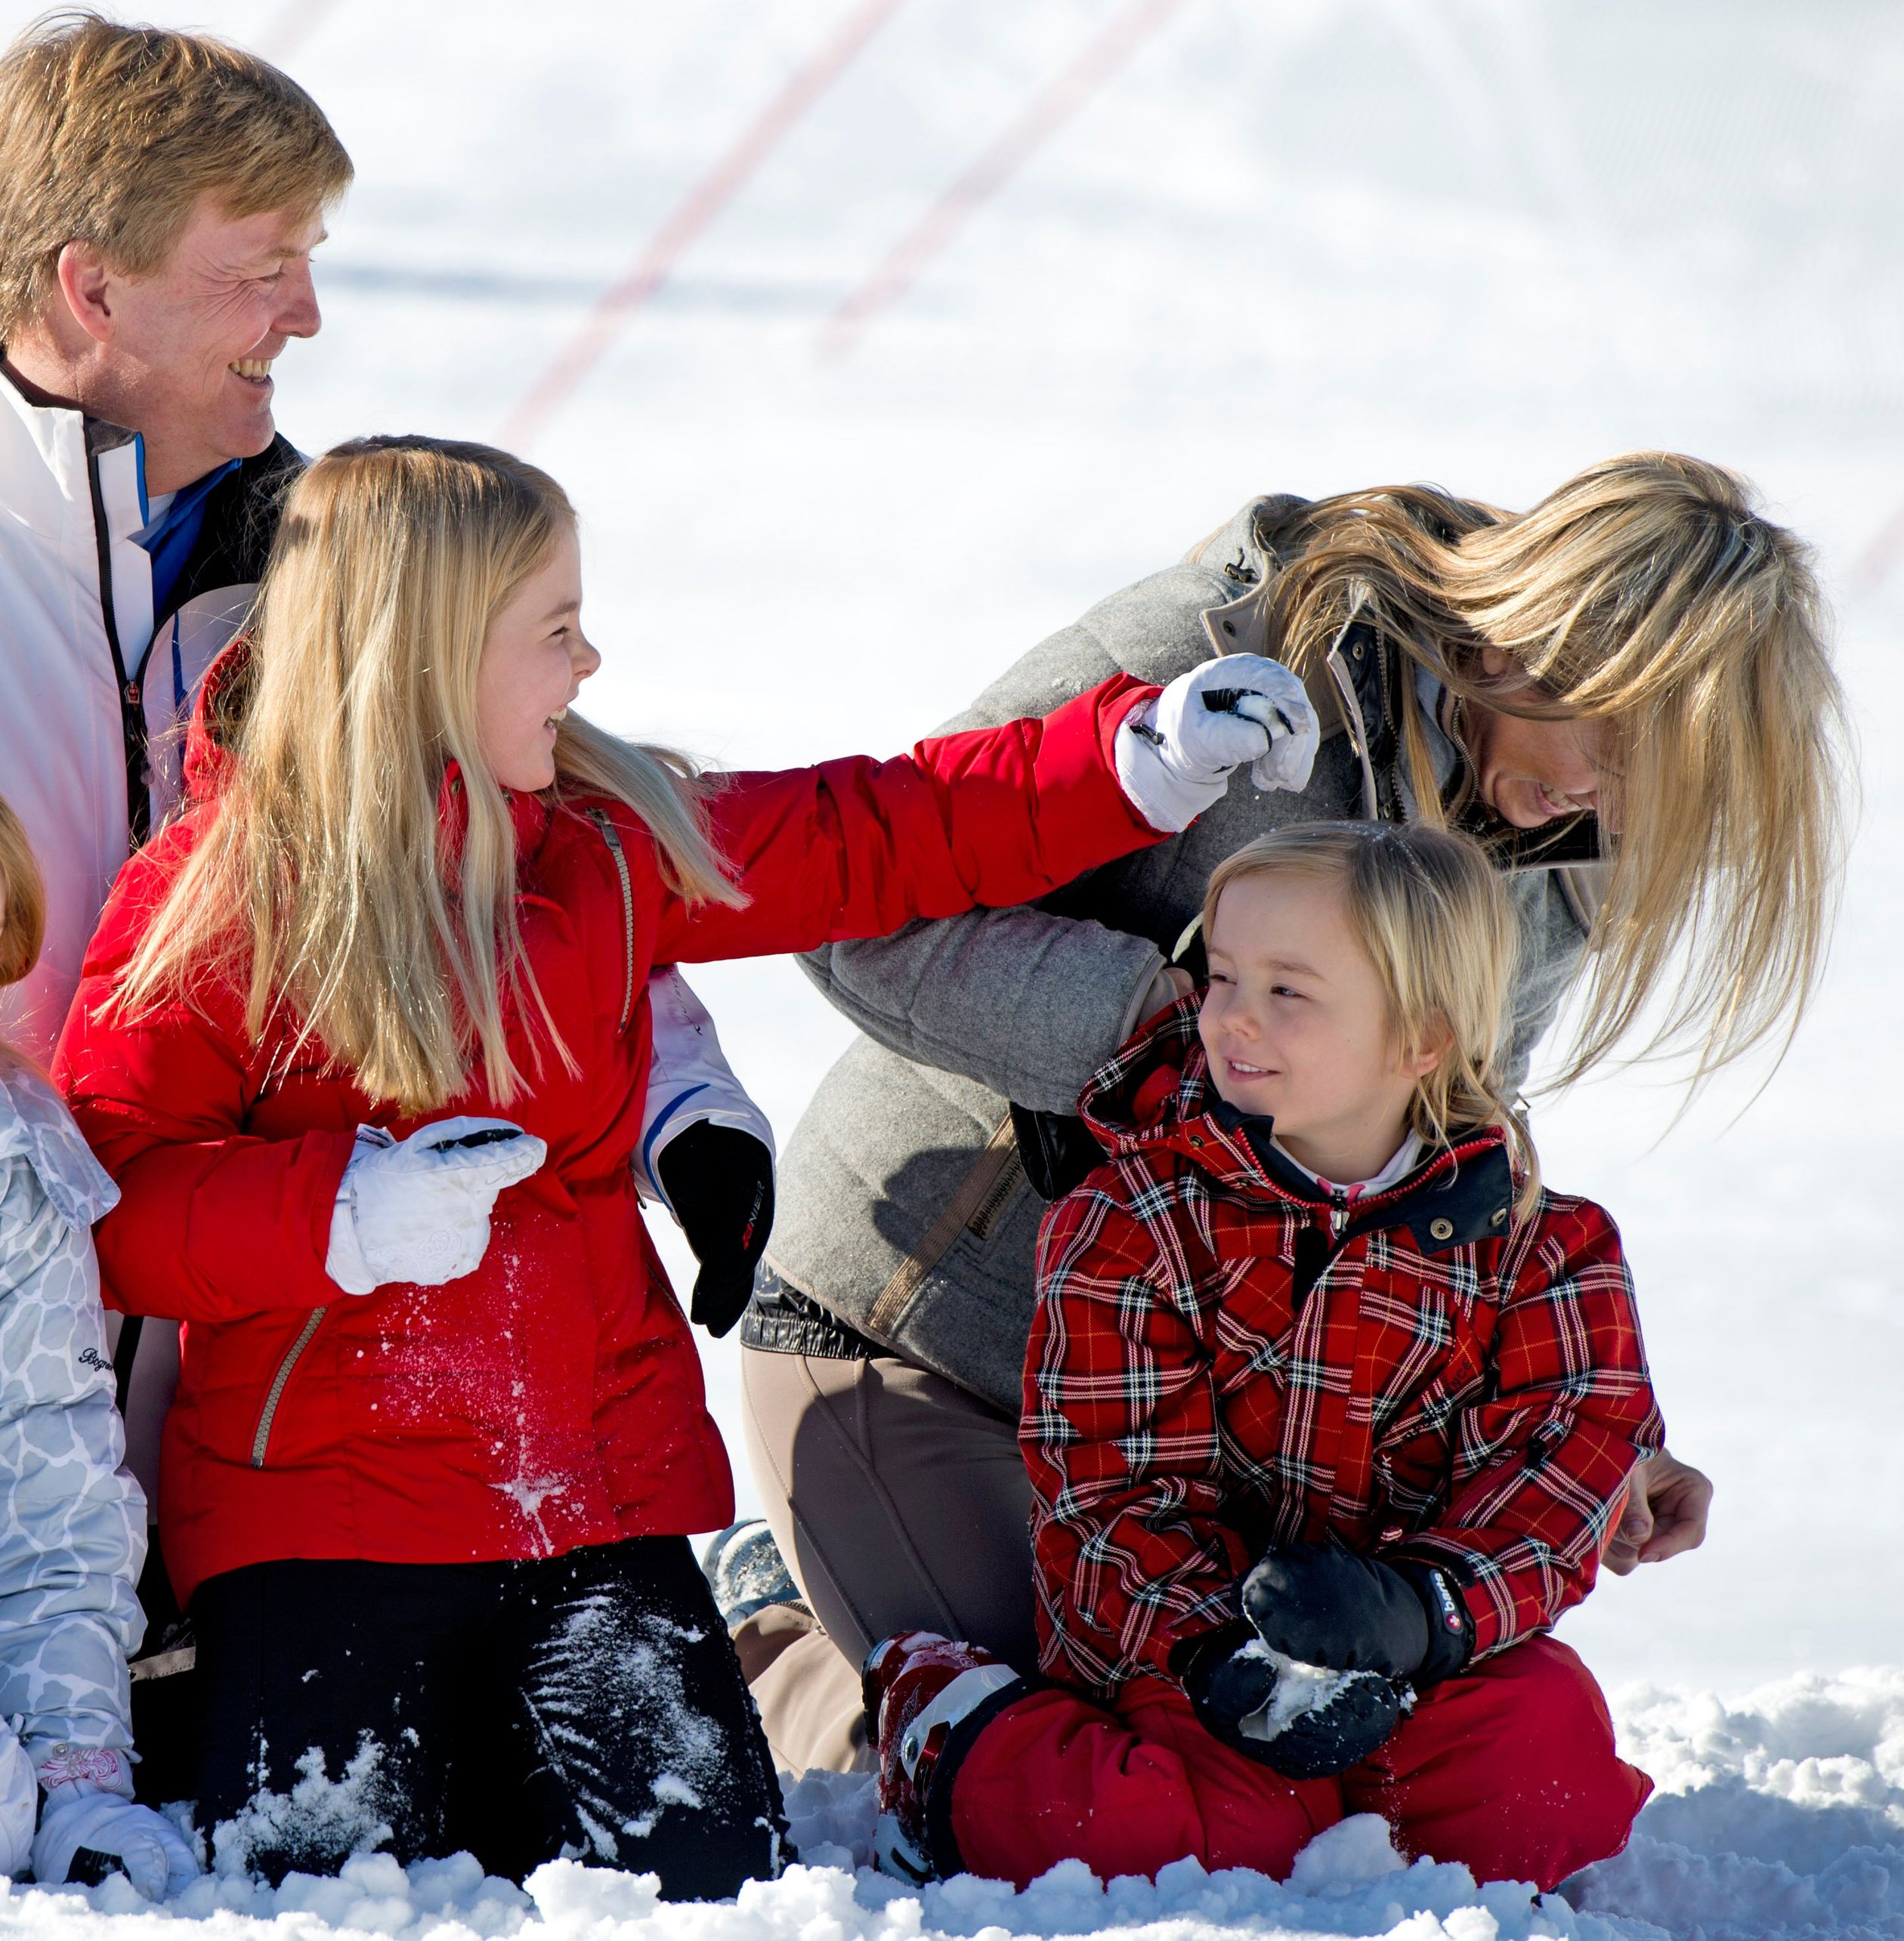 18 Februari 2013: Amalia mag van haar vader geen sneeuwballen naar de pers gooien... dus krijgt